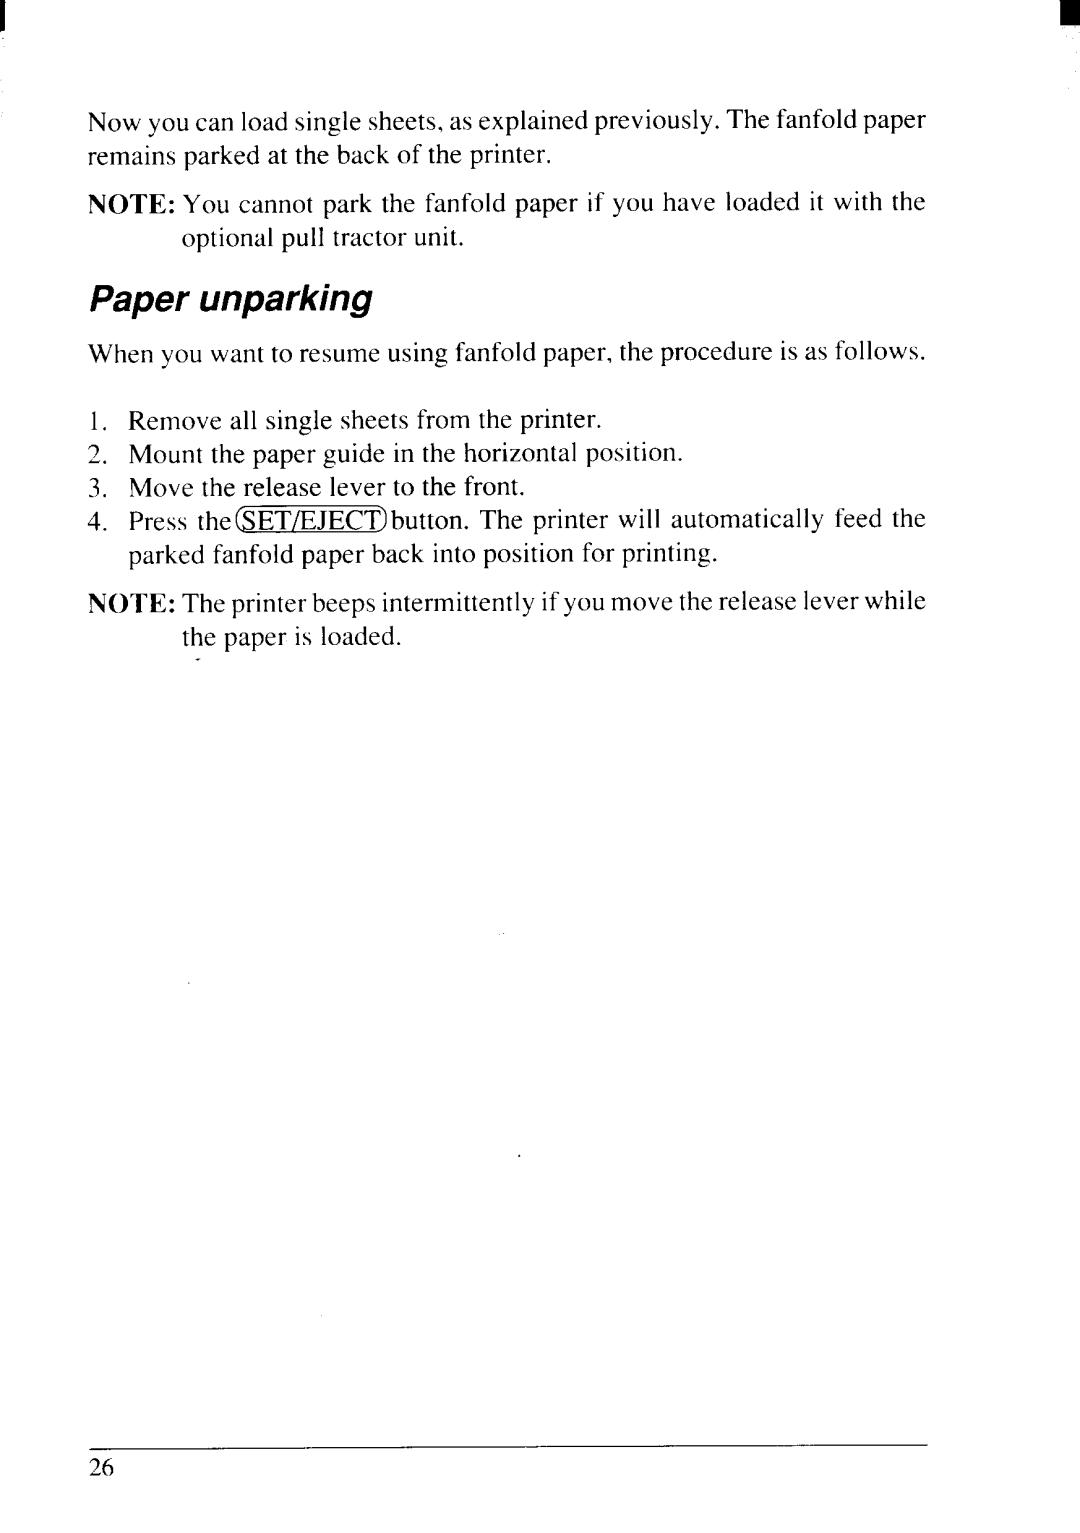 Star Micronics NX-2415II user manual Paper unparking 